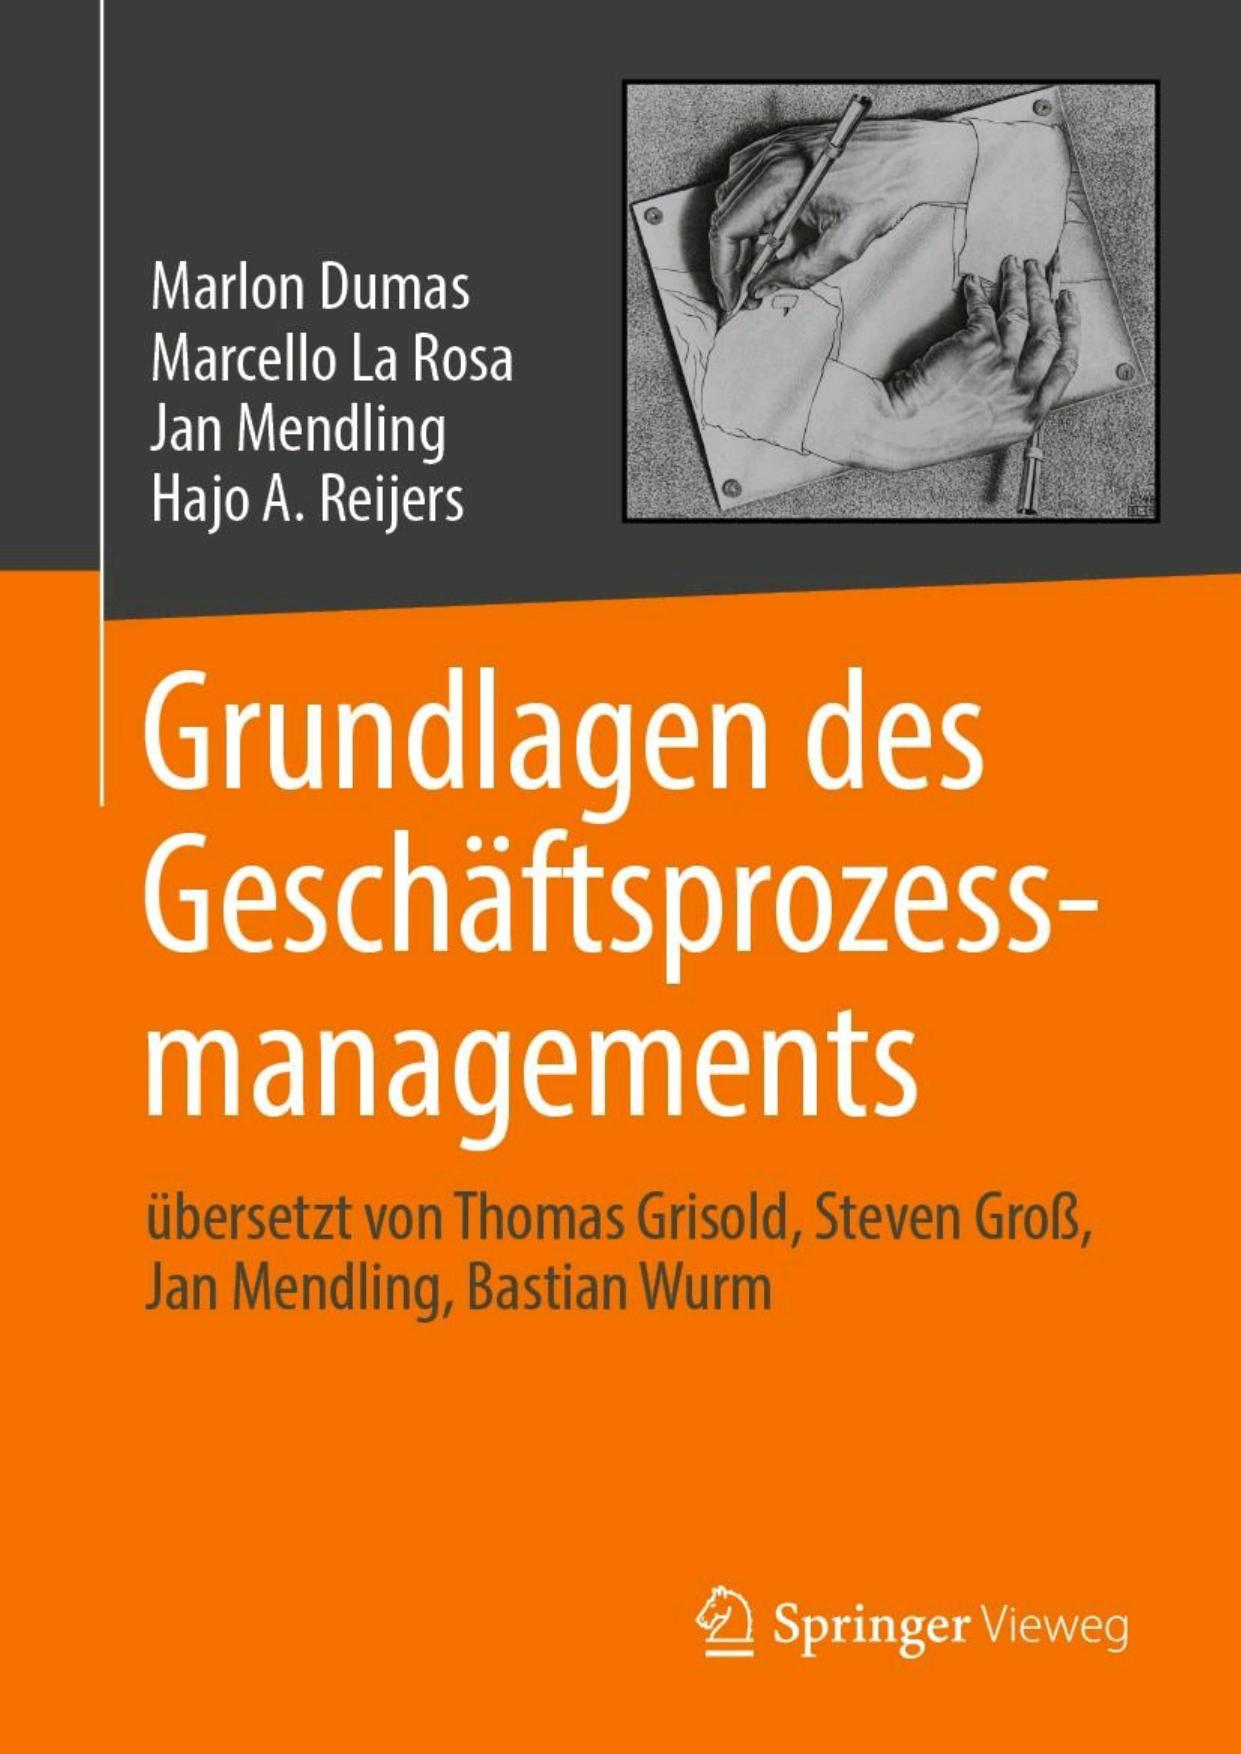 Grundlagen des Geschäftsprozessmanagements (German Edition)